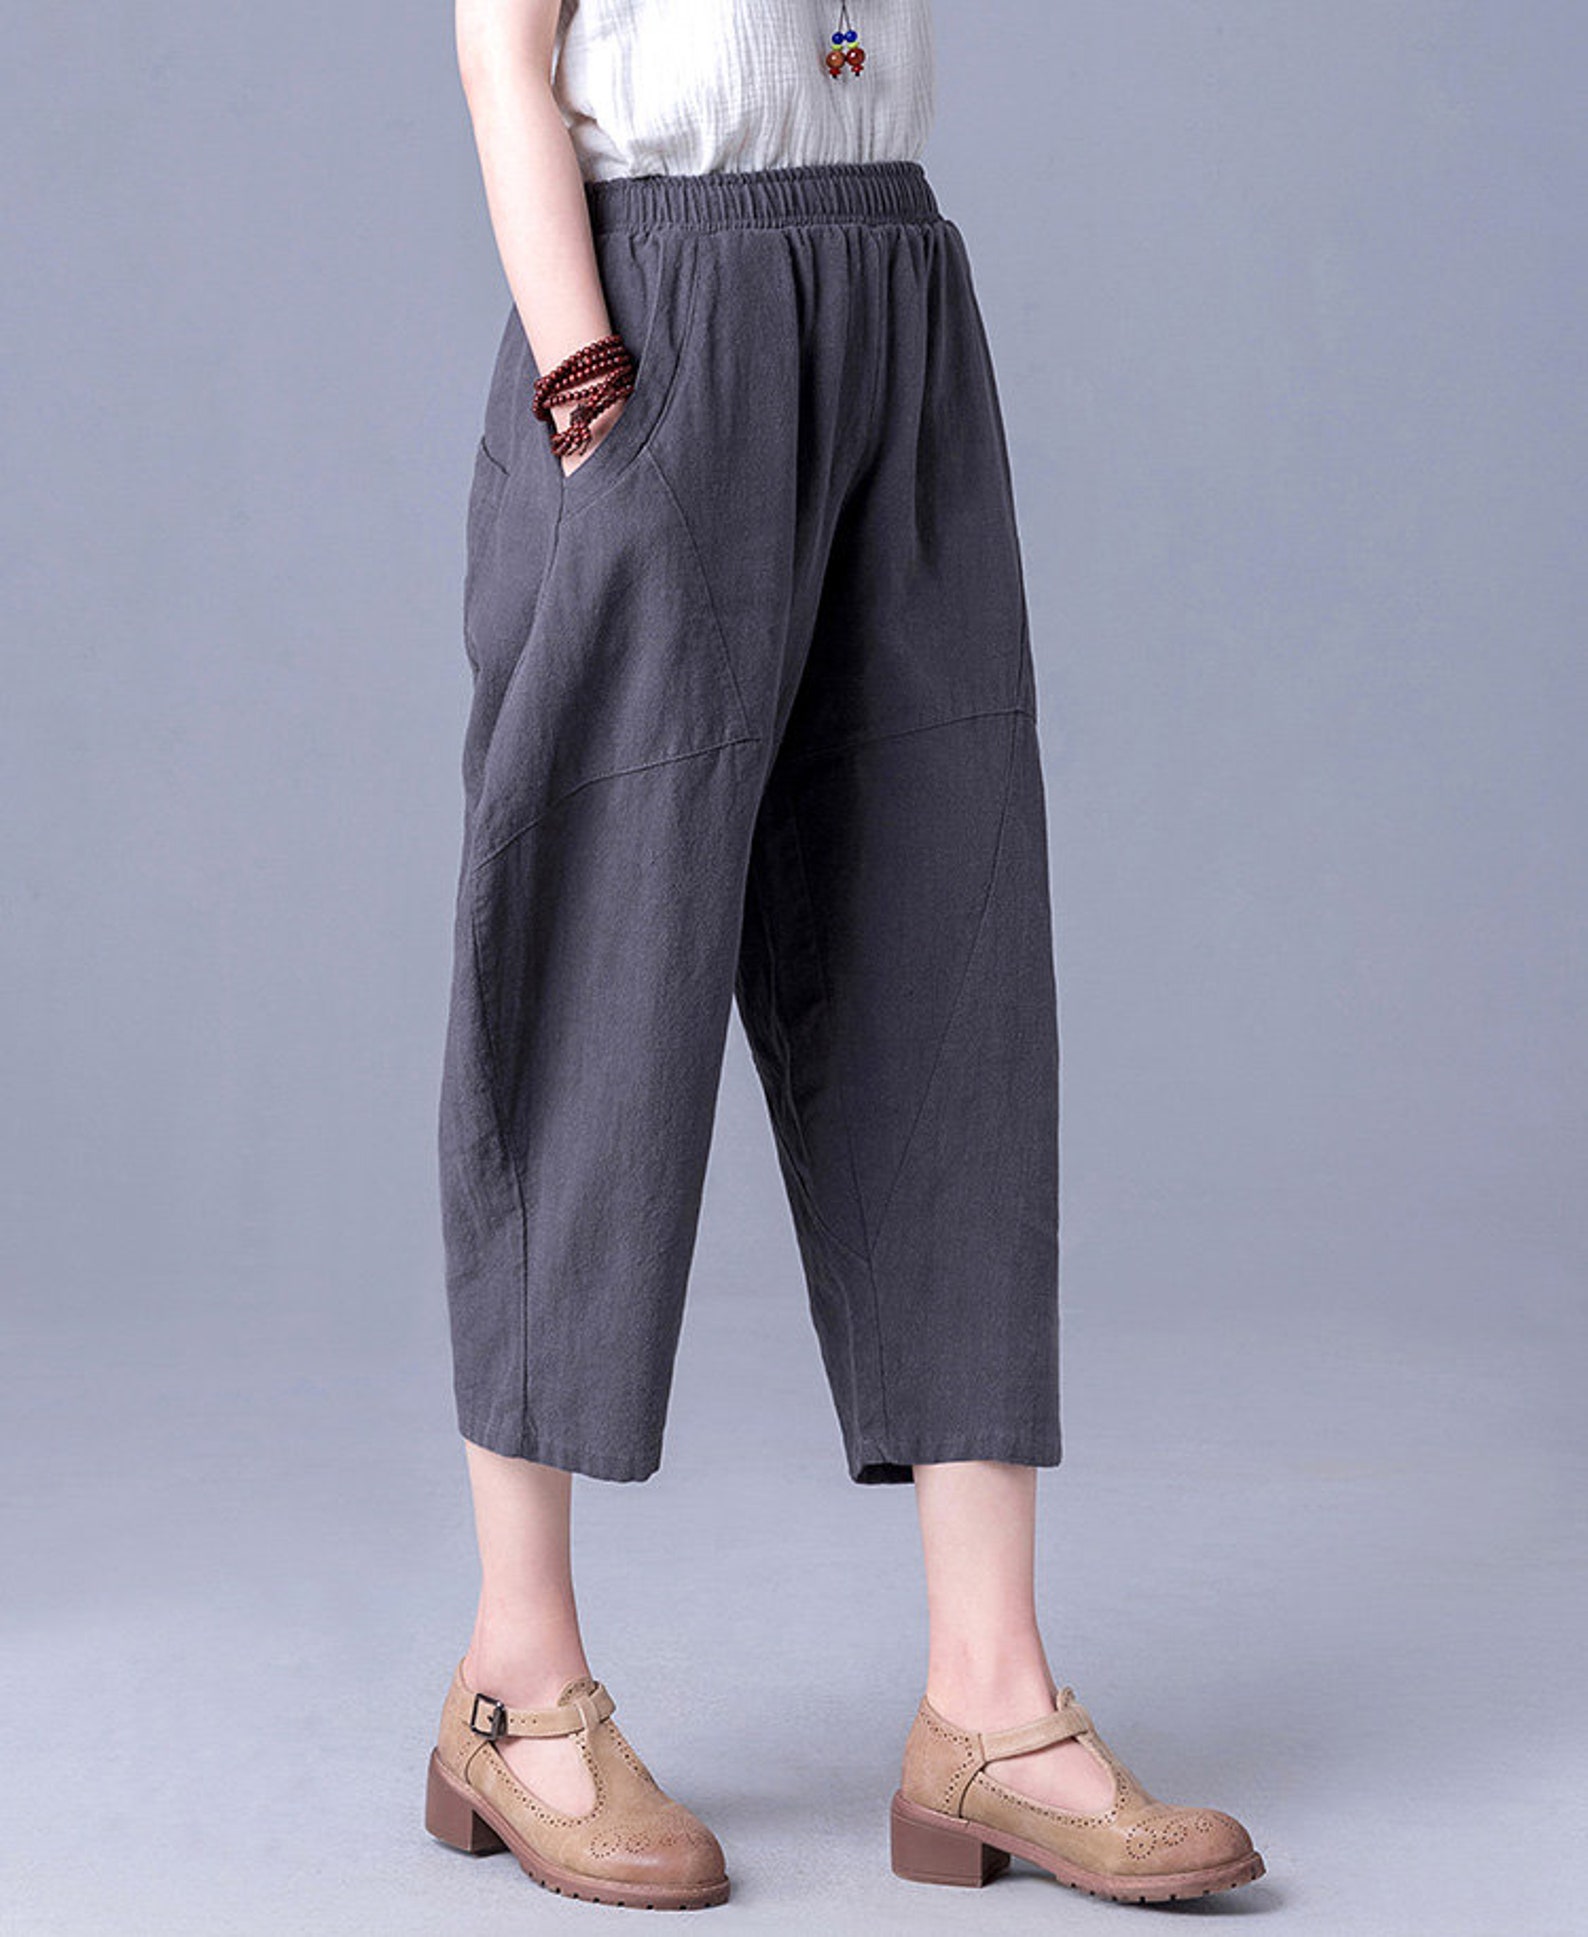 Women Calf-length Pants Cotton Capri Pants Elastic Waist Linen | Etsy